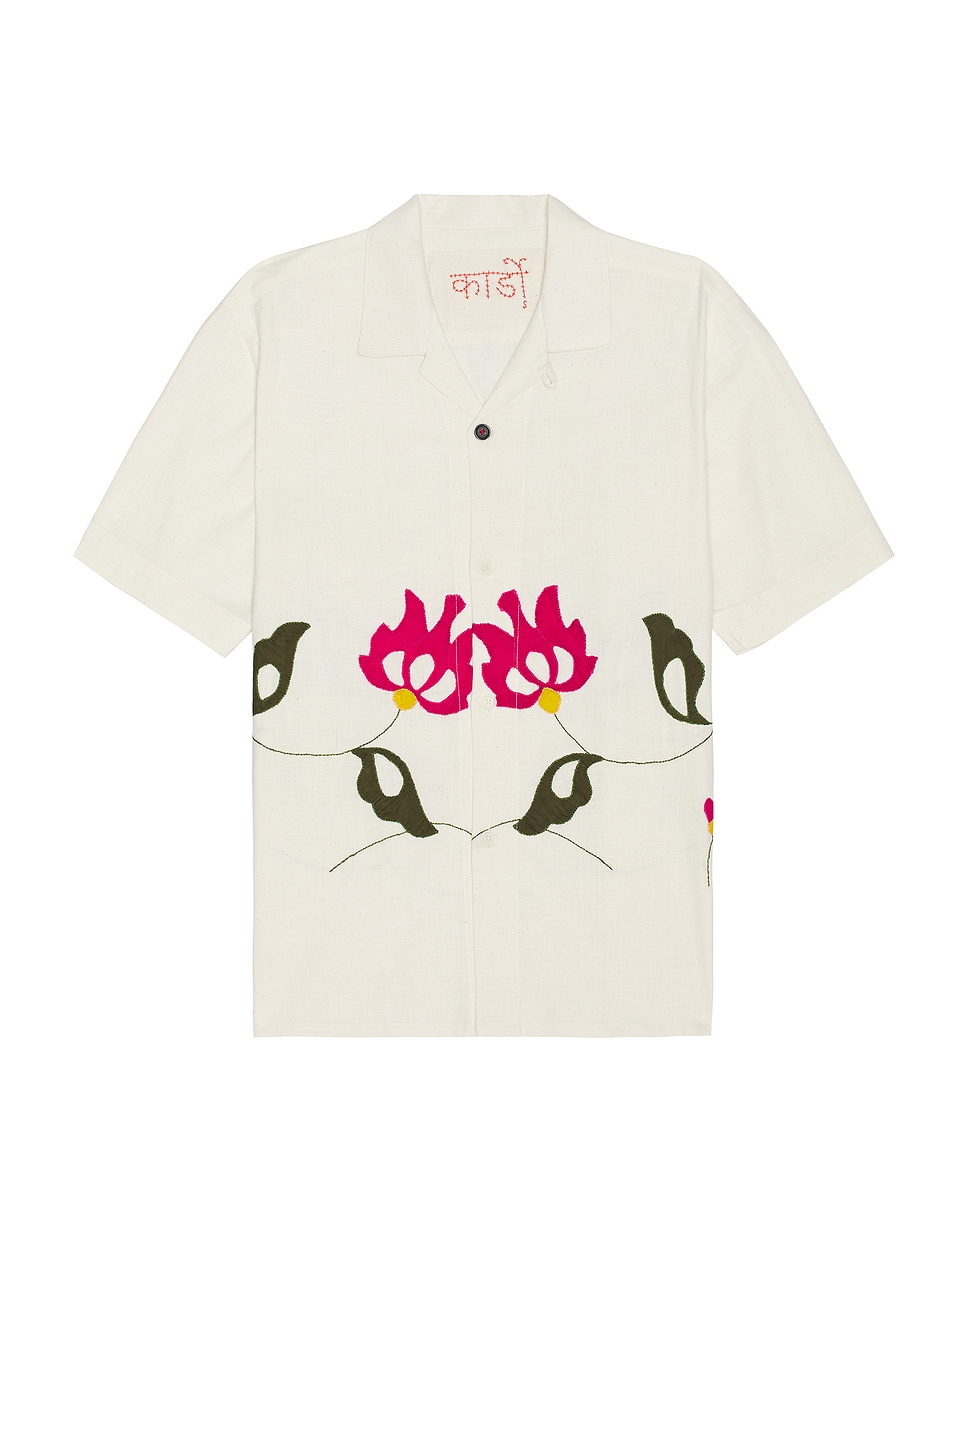 Image 1 of Kardo Ayo Shirt in Bihart Applique